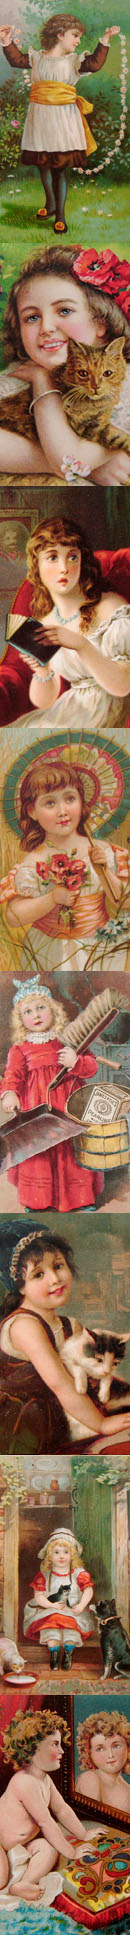 1800年代のカードたち